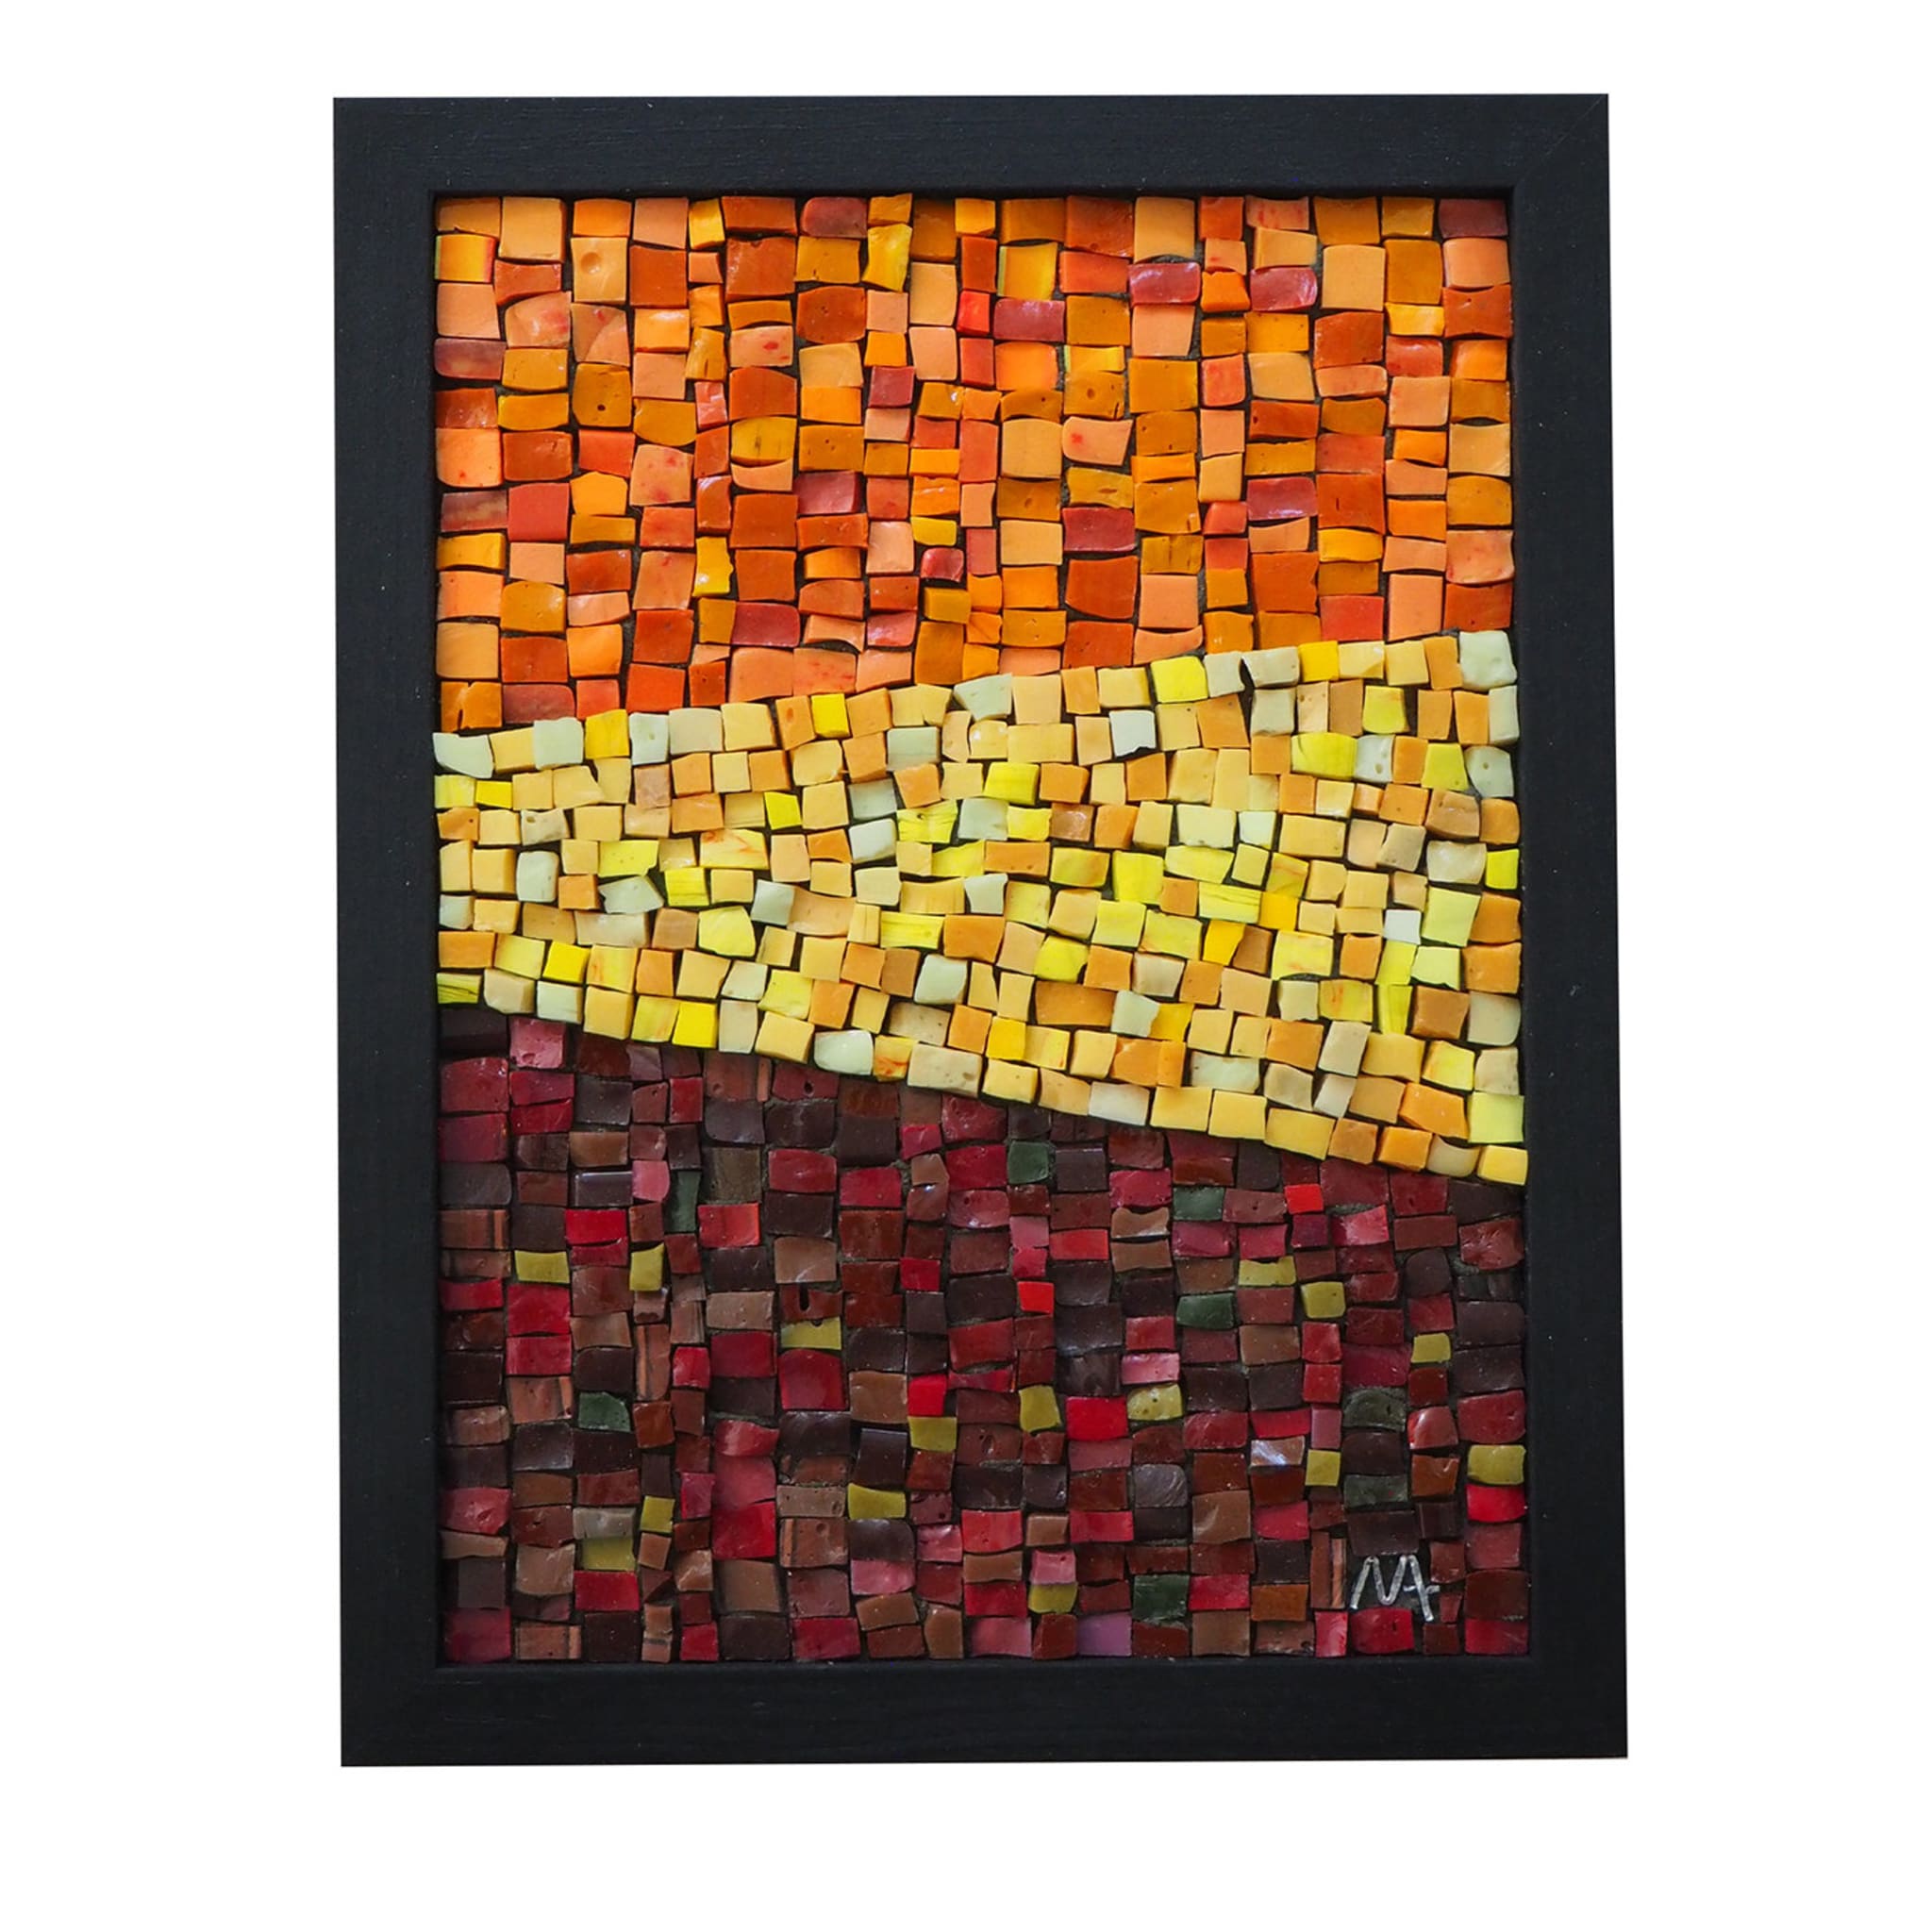 Panel de mosaico Autunno 1.2 - Vista principal